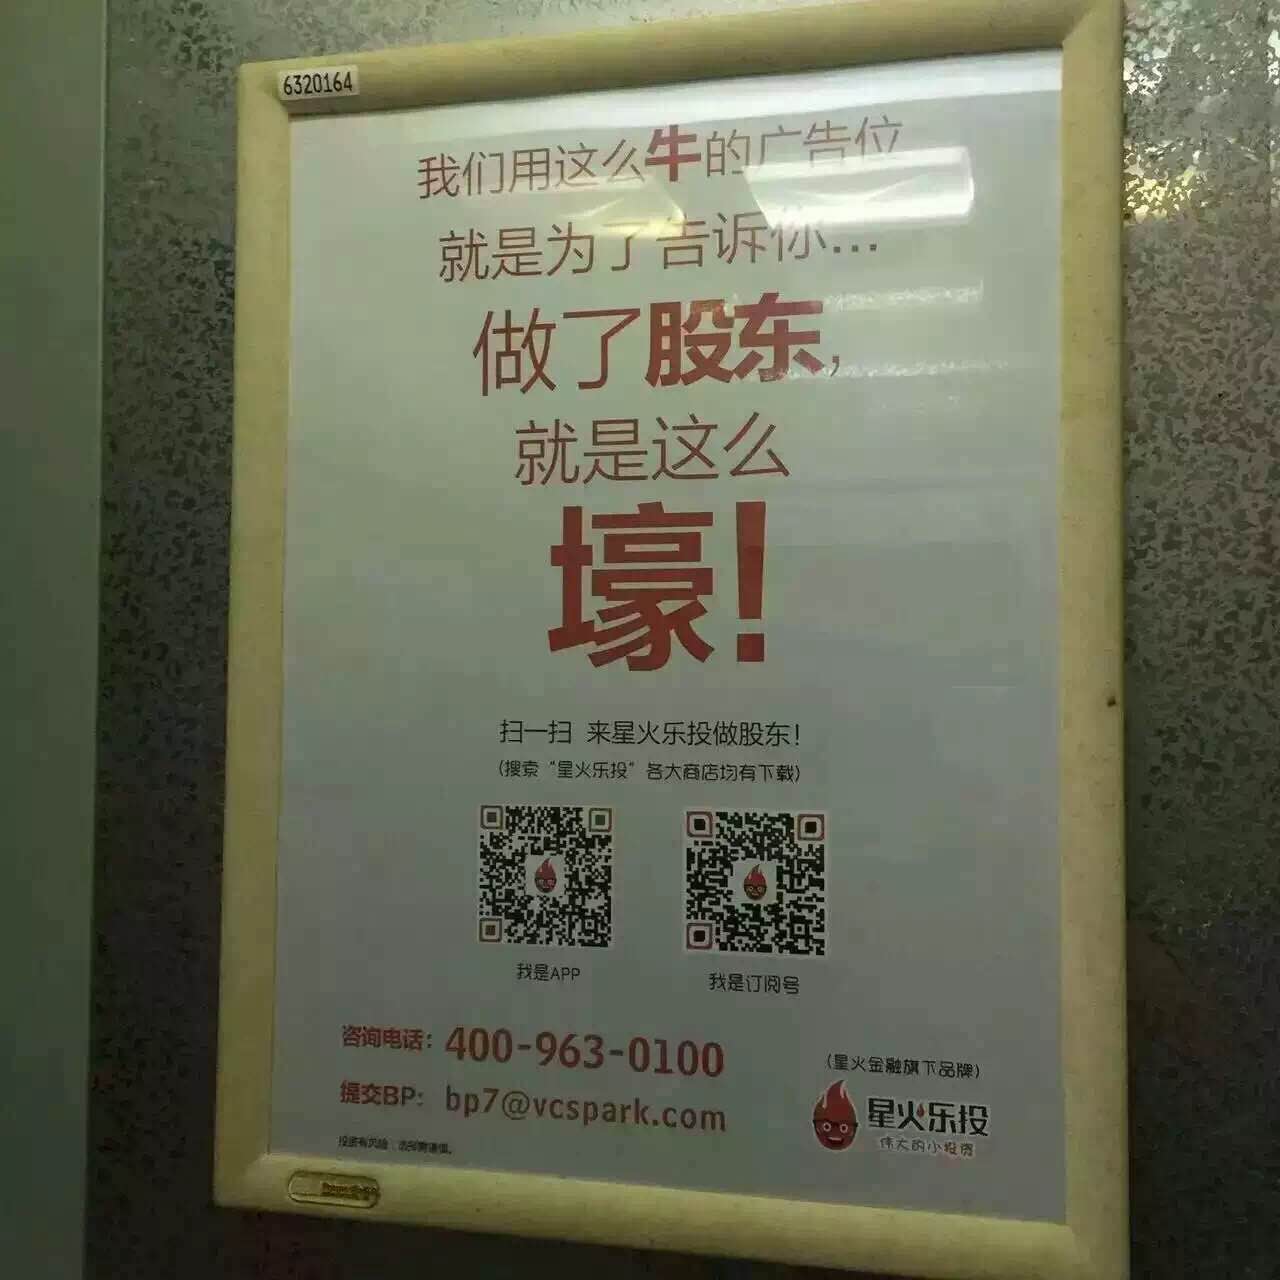 深圳电梯广告-13480815085戴先生-分众传媒深圳有限公司